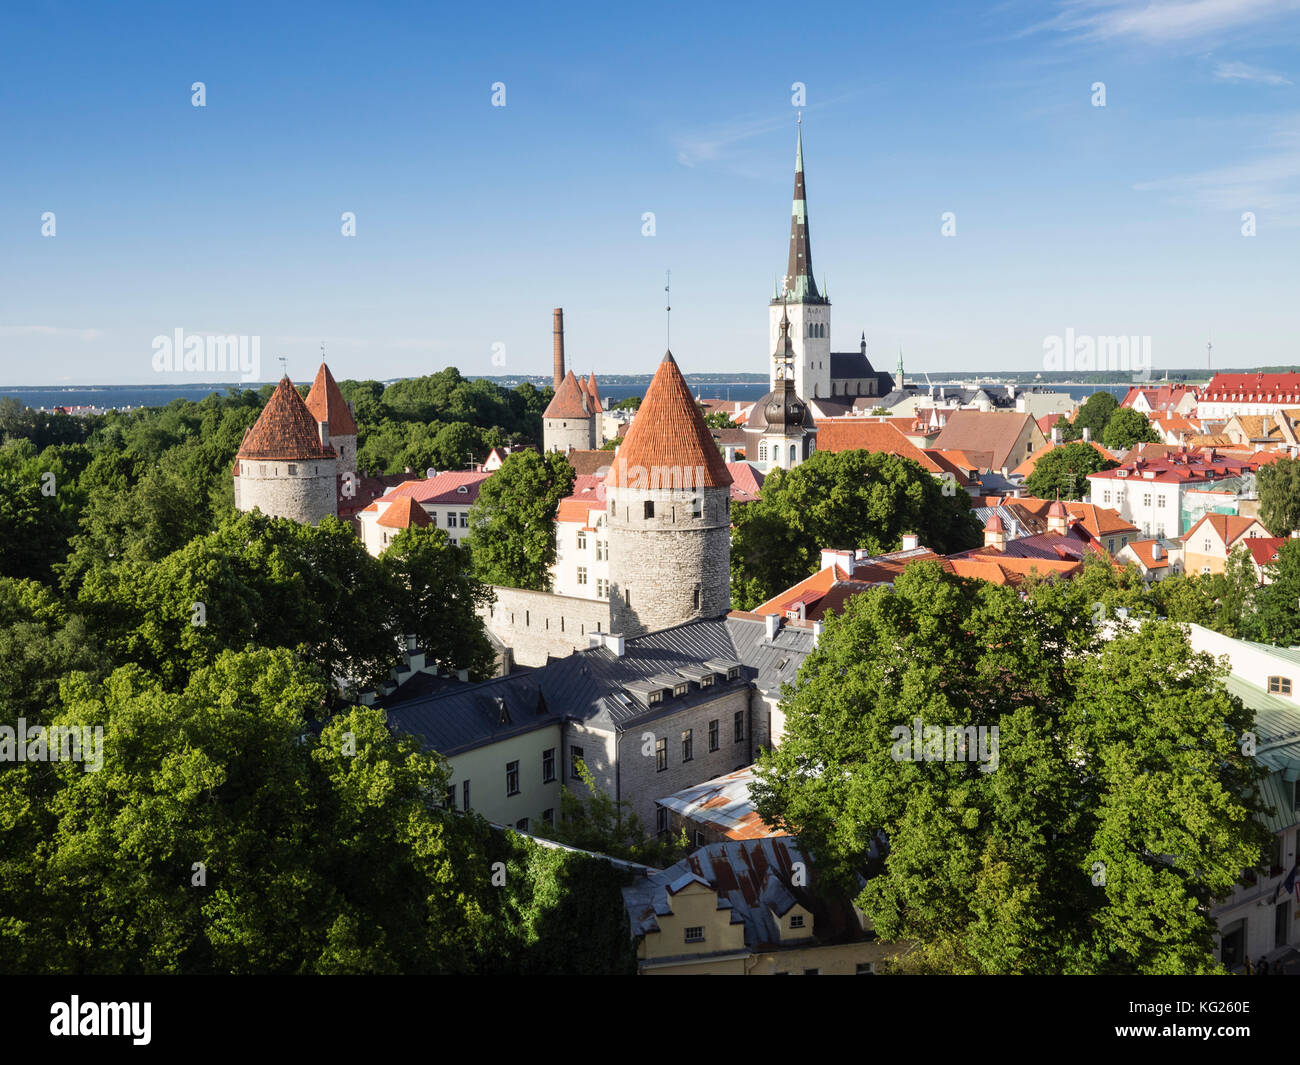 Vue panoramique depuis la plate-forme de Patkuli, vieille ville, site classé au patrimoine mondial de l'UNESCO, Tallinn, Estonie, Etats baltes, Europe Banque D'Images